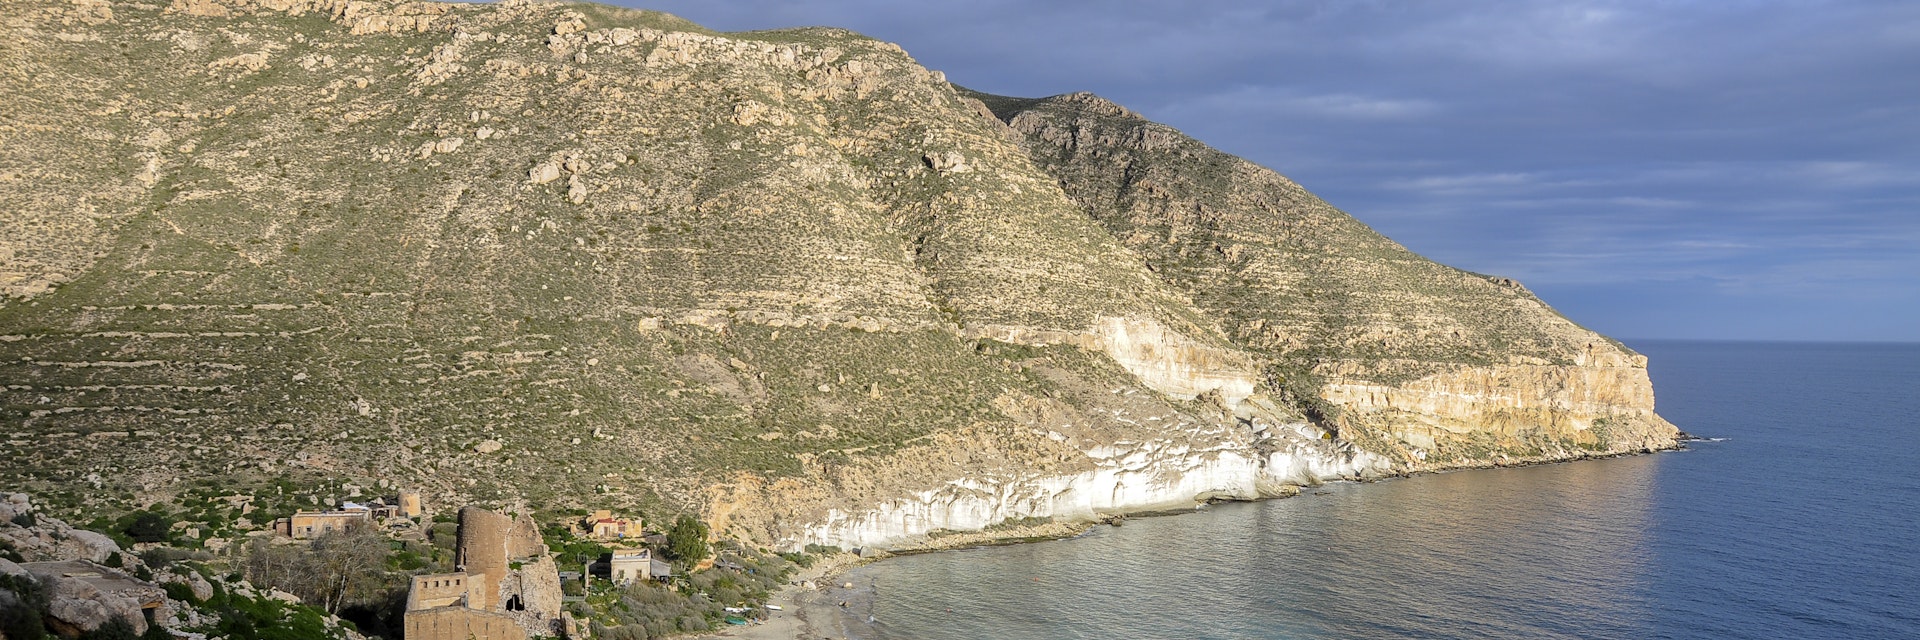 View of the San Pedro cove in the Natural park of Nijar-Cabo de Gata, Almeria, Spain.